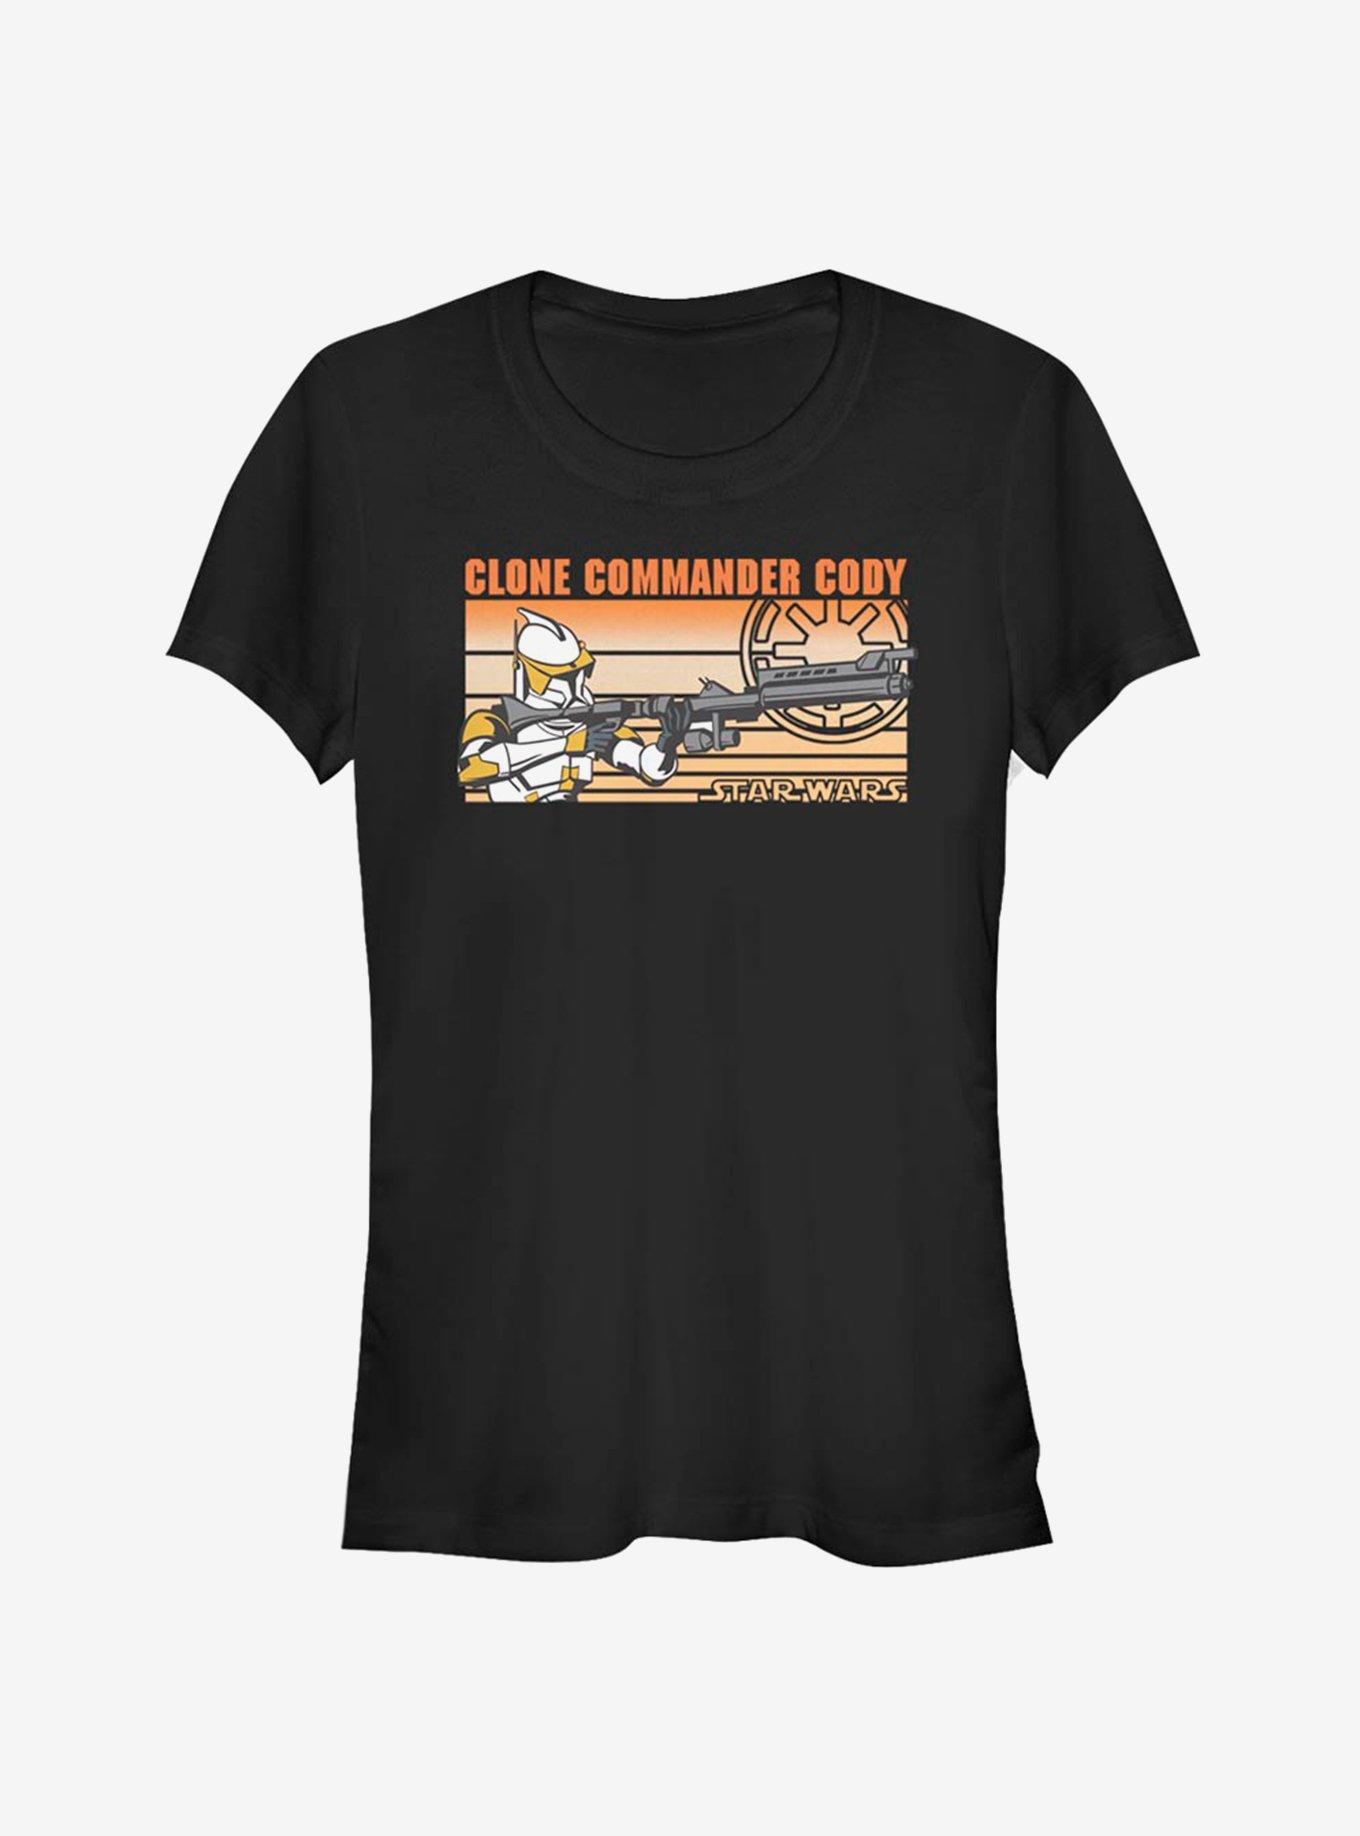 Star Wars The Clone Commander Cody Girls T-Shirt